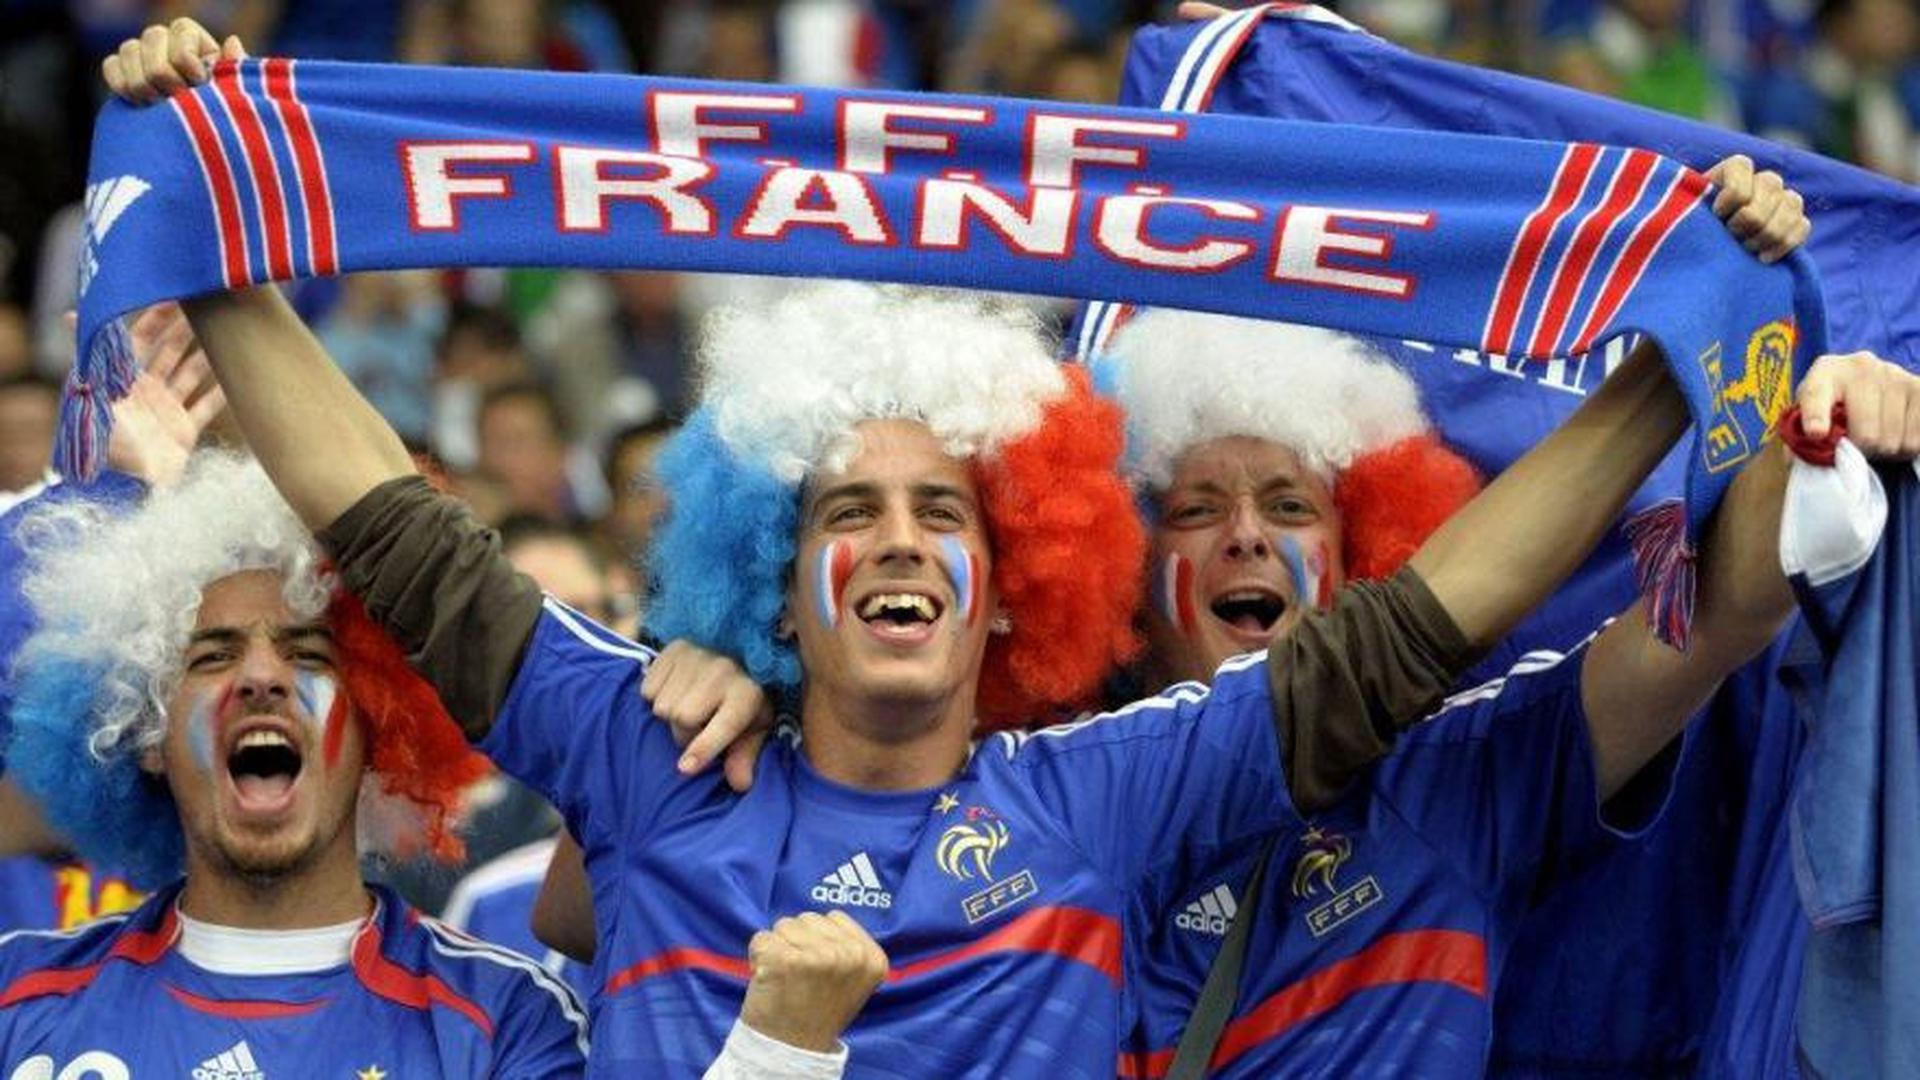 C'est à eux de jouer: les Bleus affrontent ce vendredi soir la Roumanie au Stade de France en ouverture de l'Euro-2016, dans un pays qui ne demande qu'à vibrer aux exploits d'Antoine Griezmann et Paul Pogba.